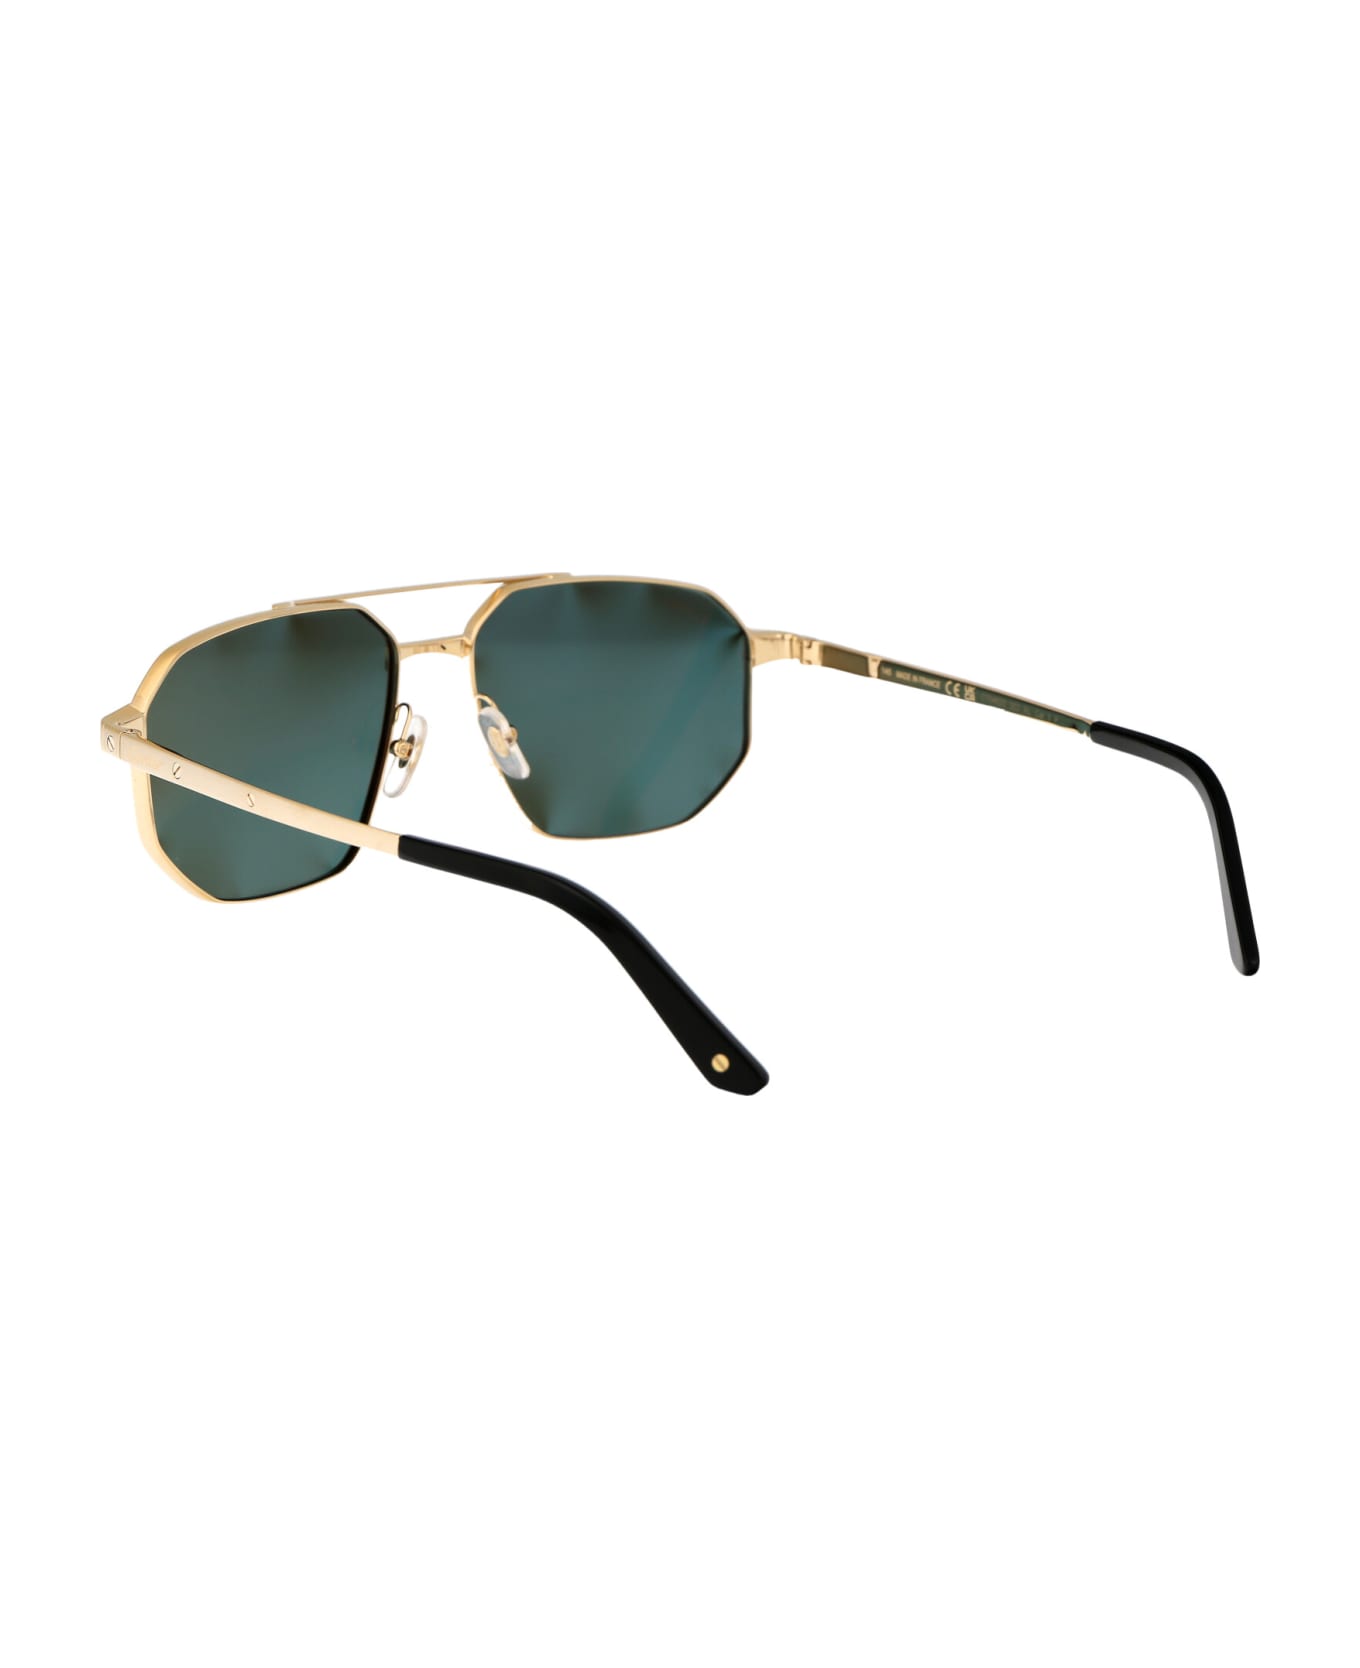 Cartier Eyewear Ct0462s Sunglasses - 003 GOLD GOLD GREEN